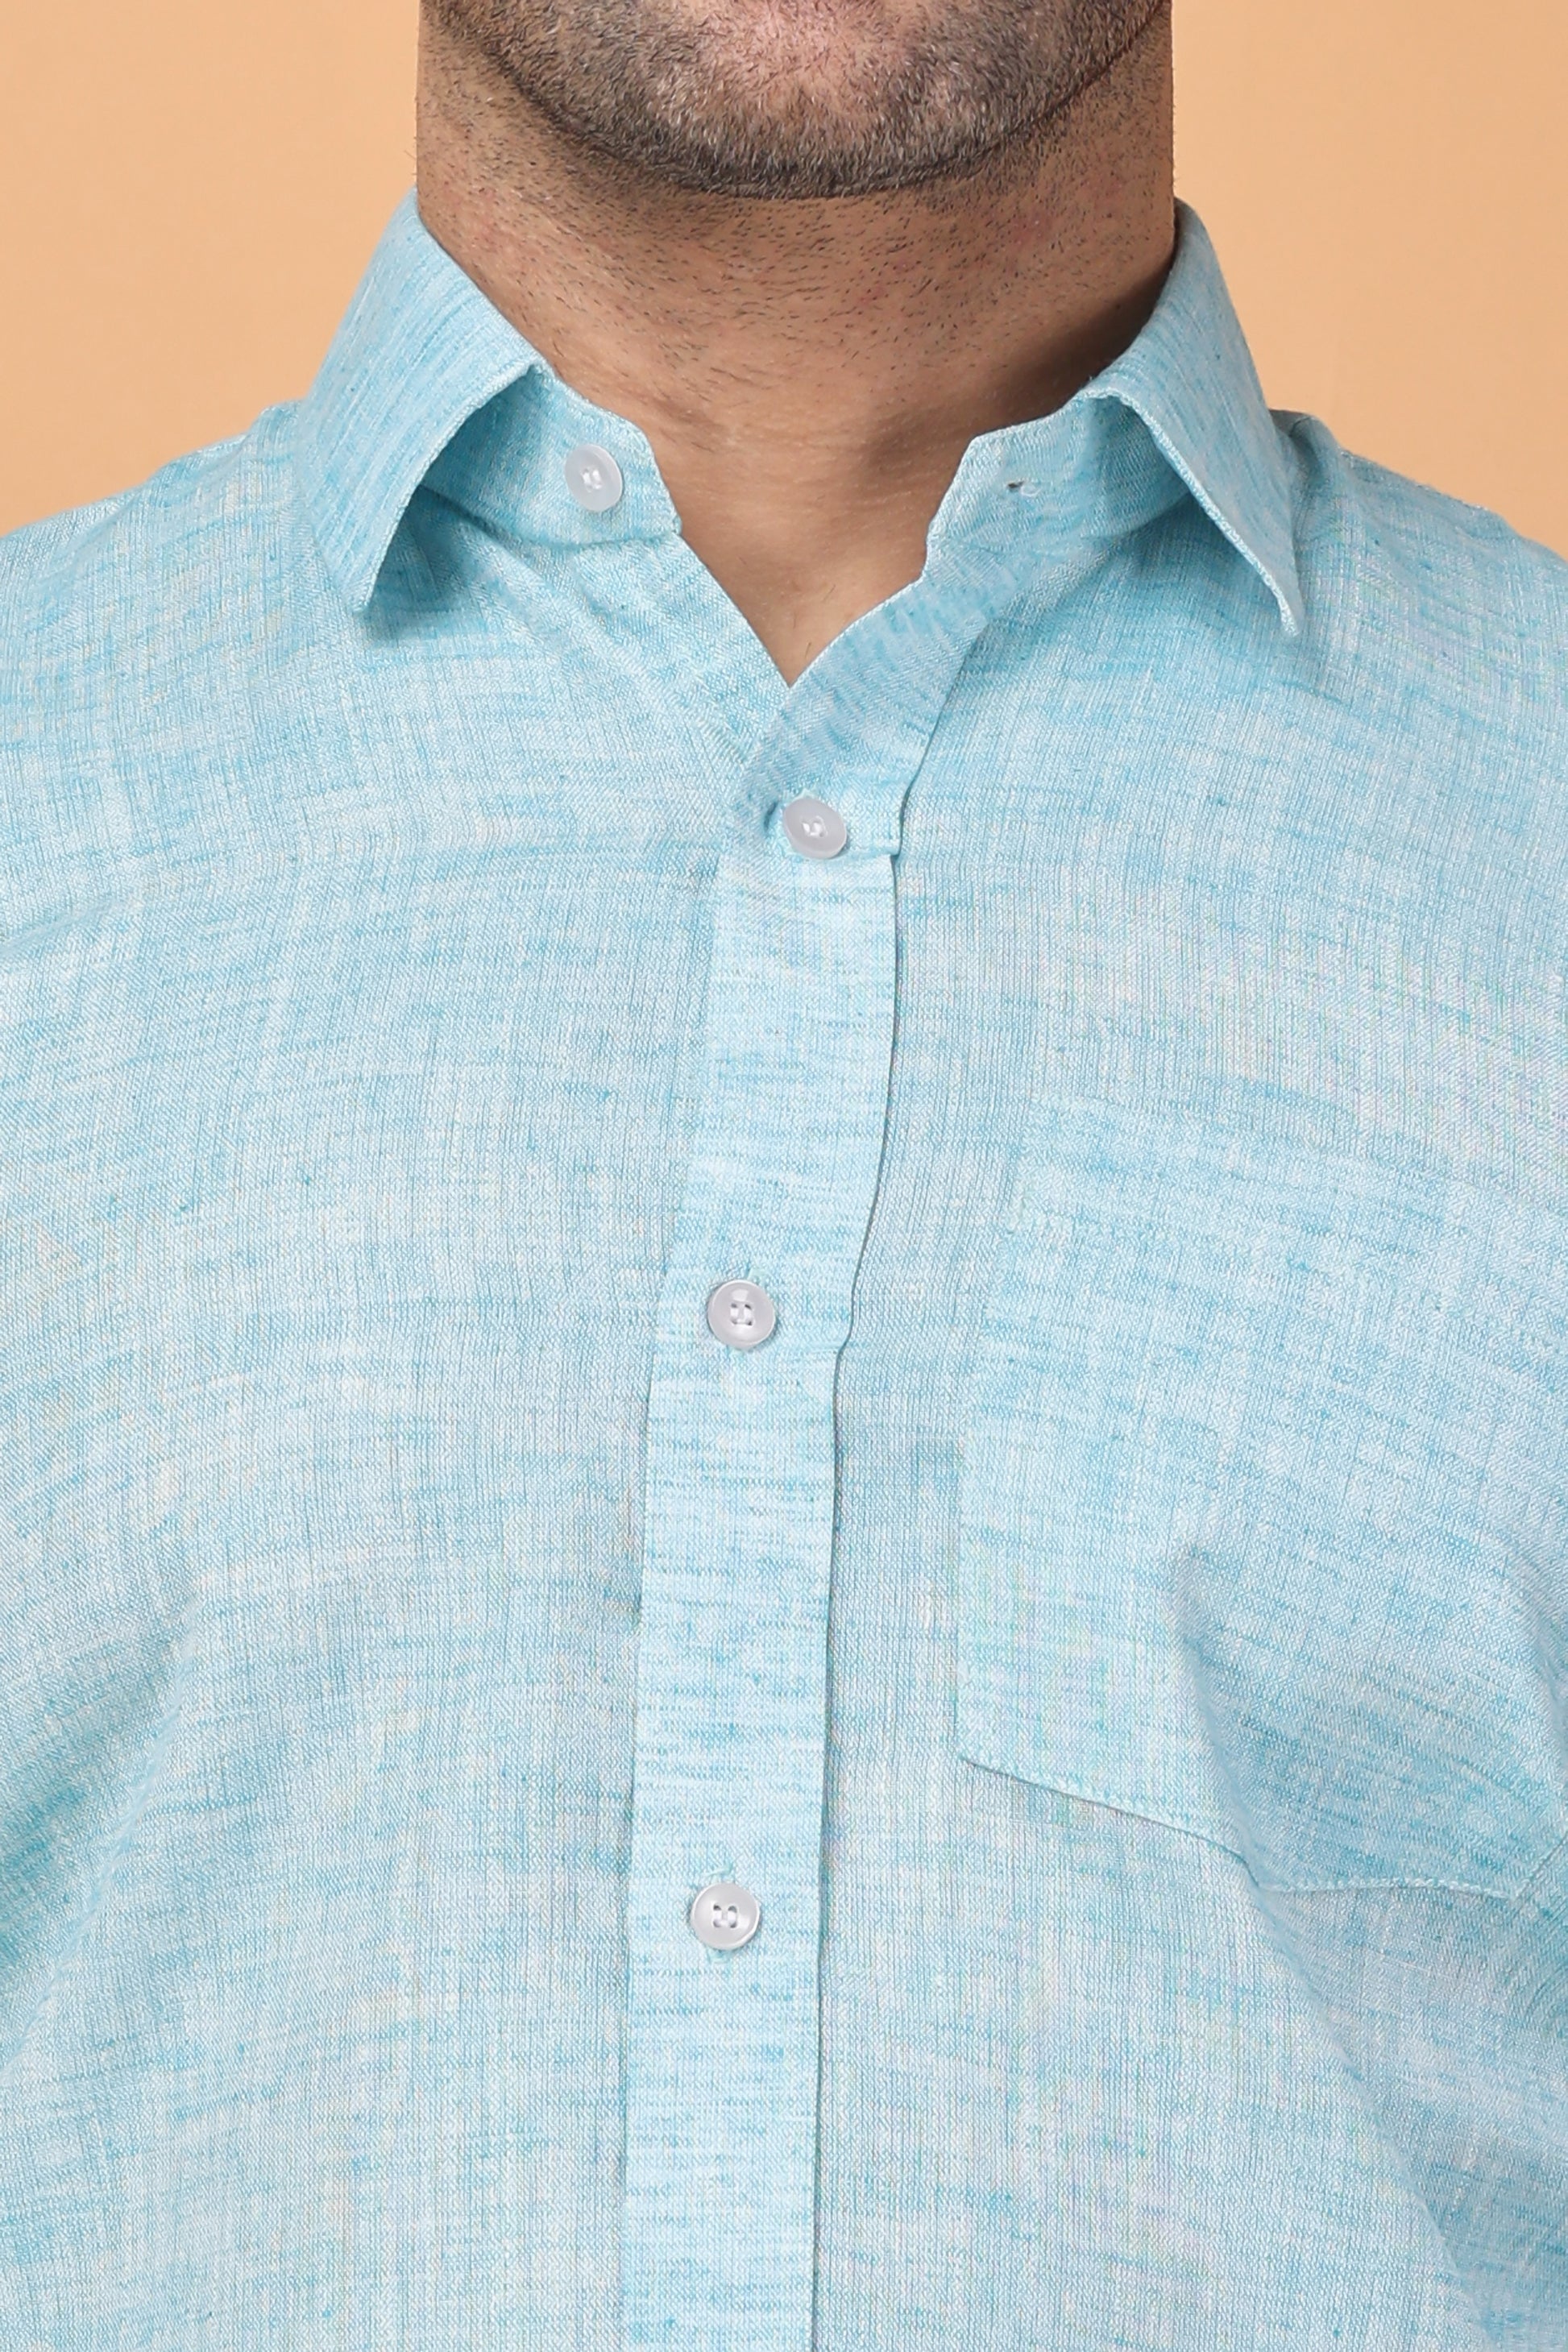 Light Blue Plus Size Shirts For Men